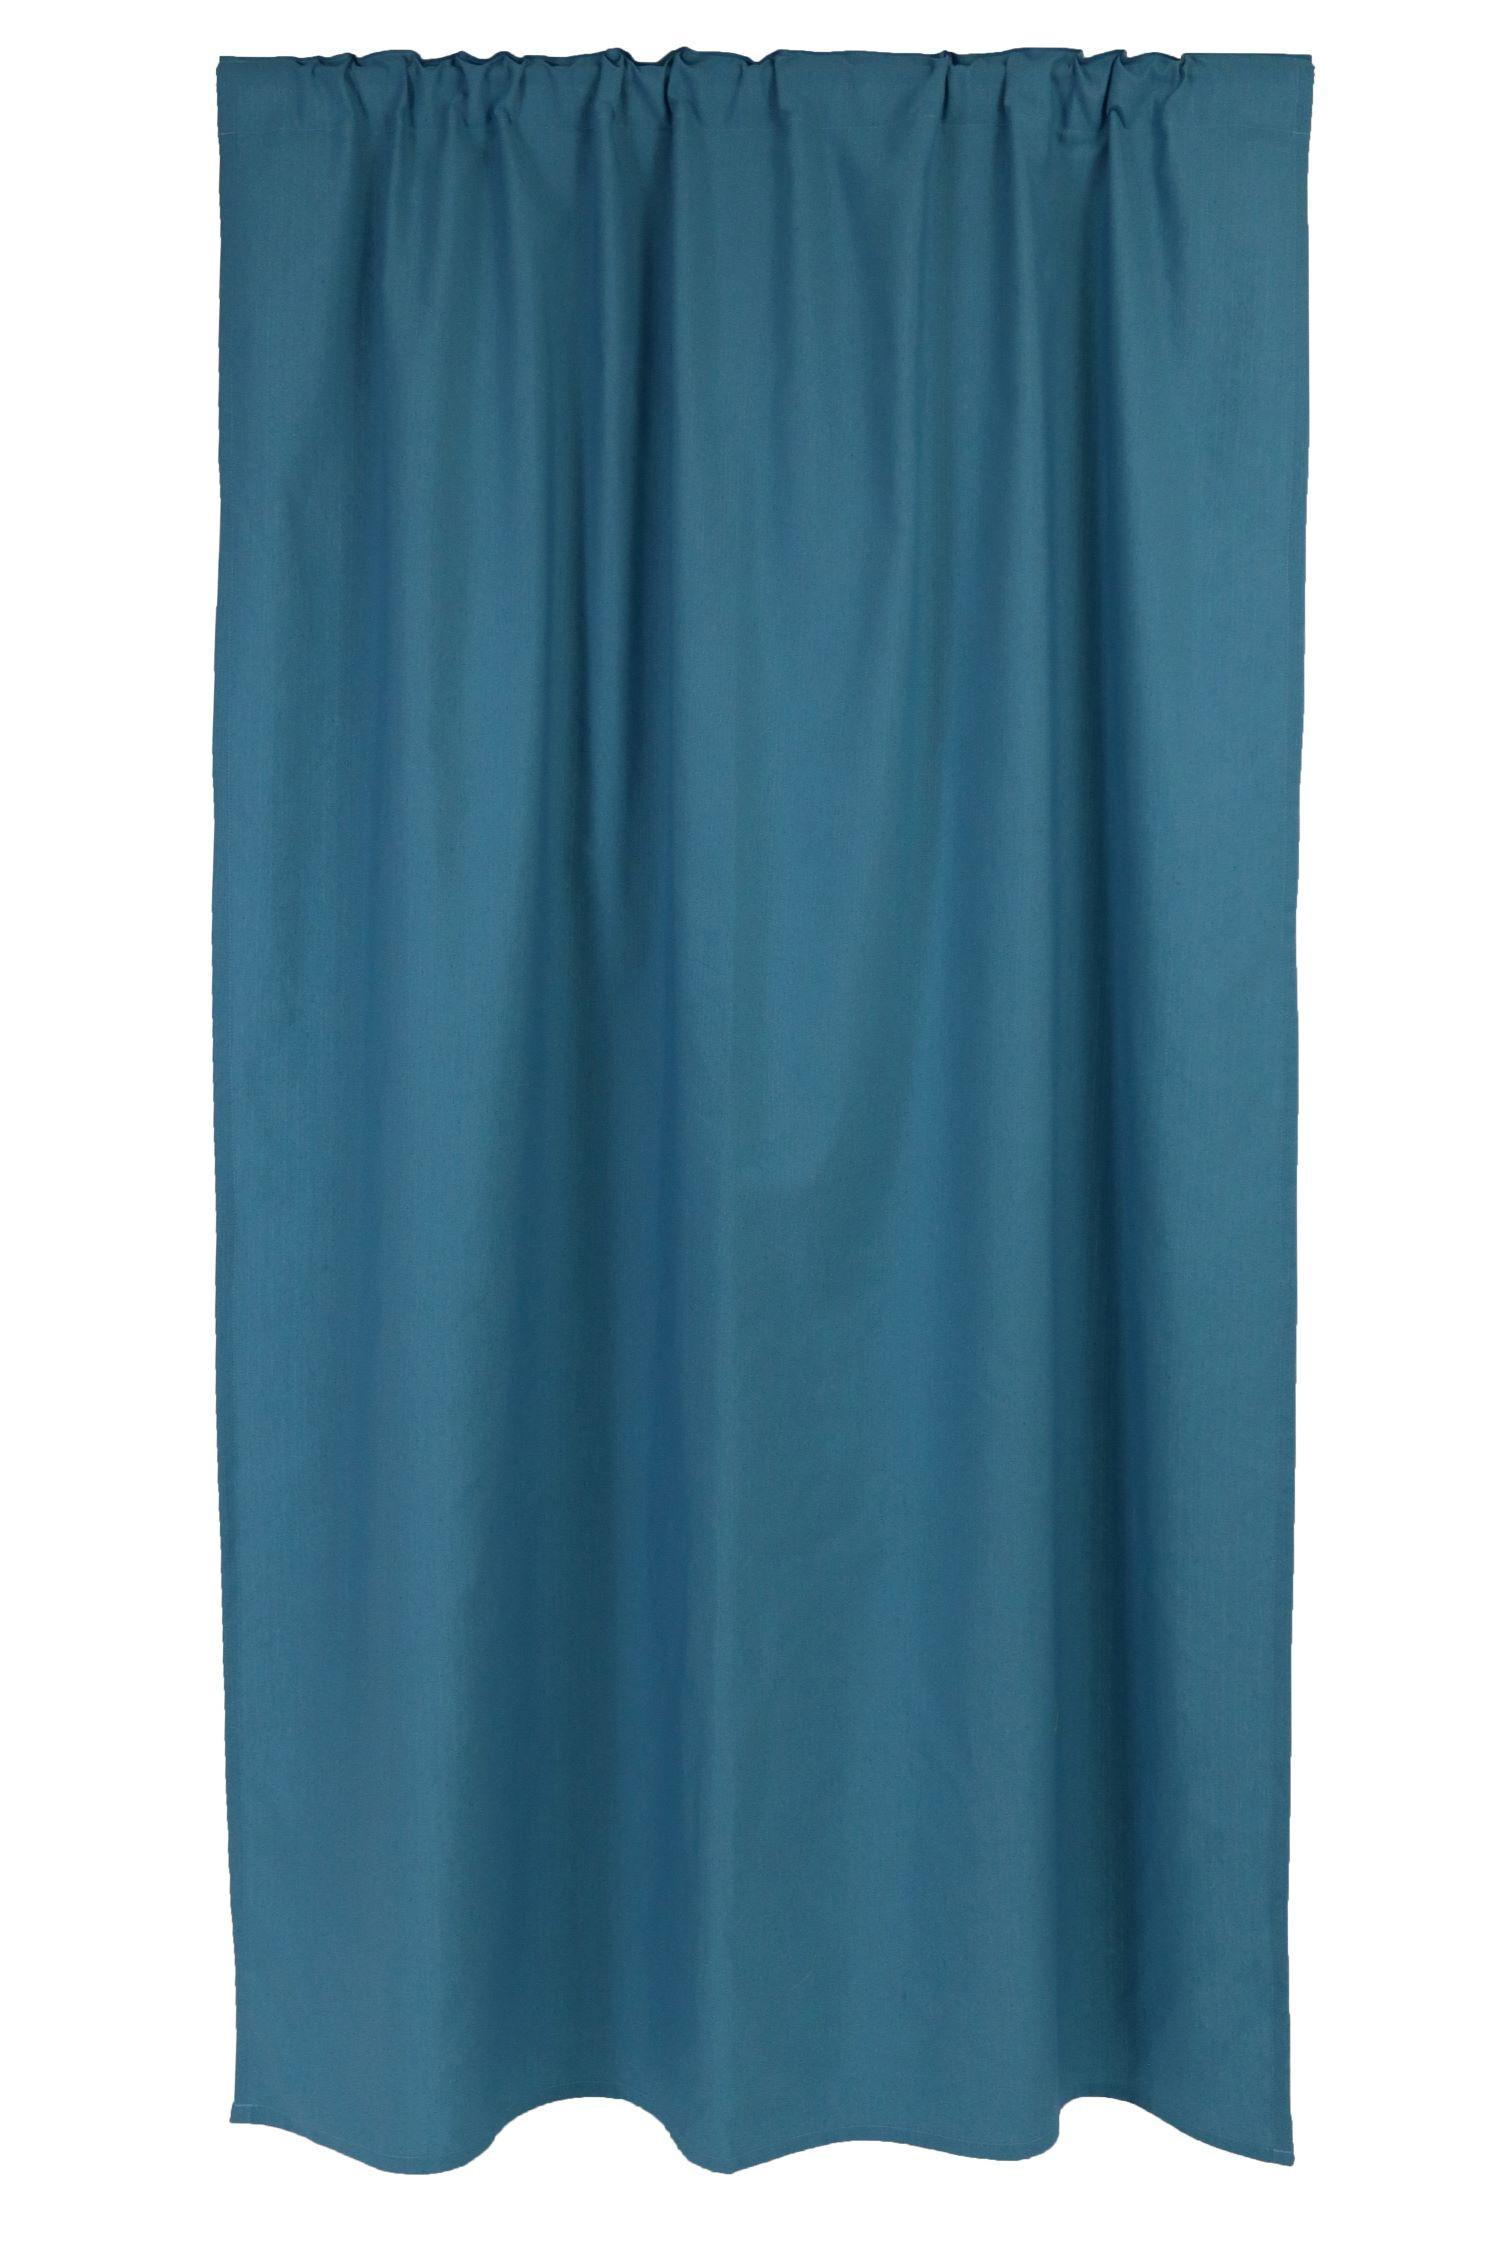 Draperie gata confecționată Emoțion - albastru, textil (140/240cm)